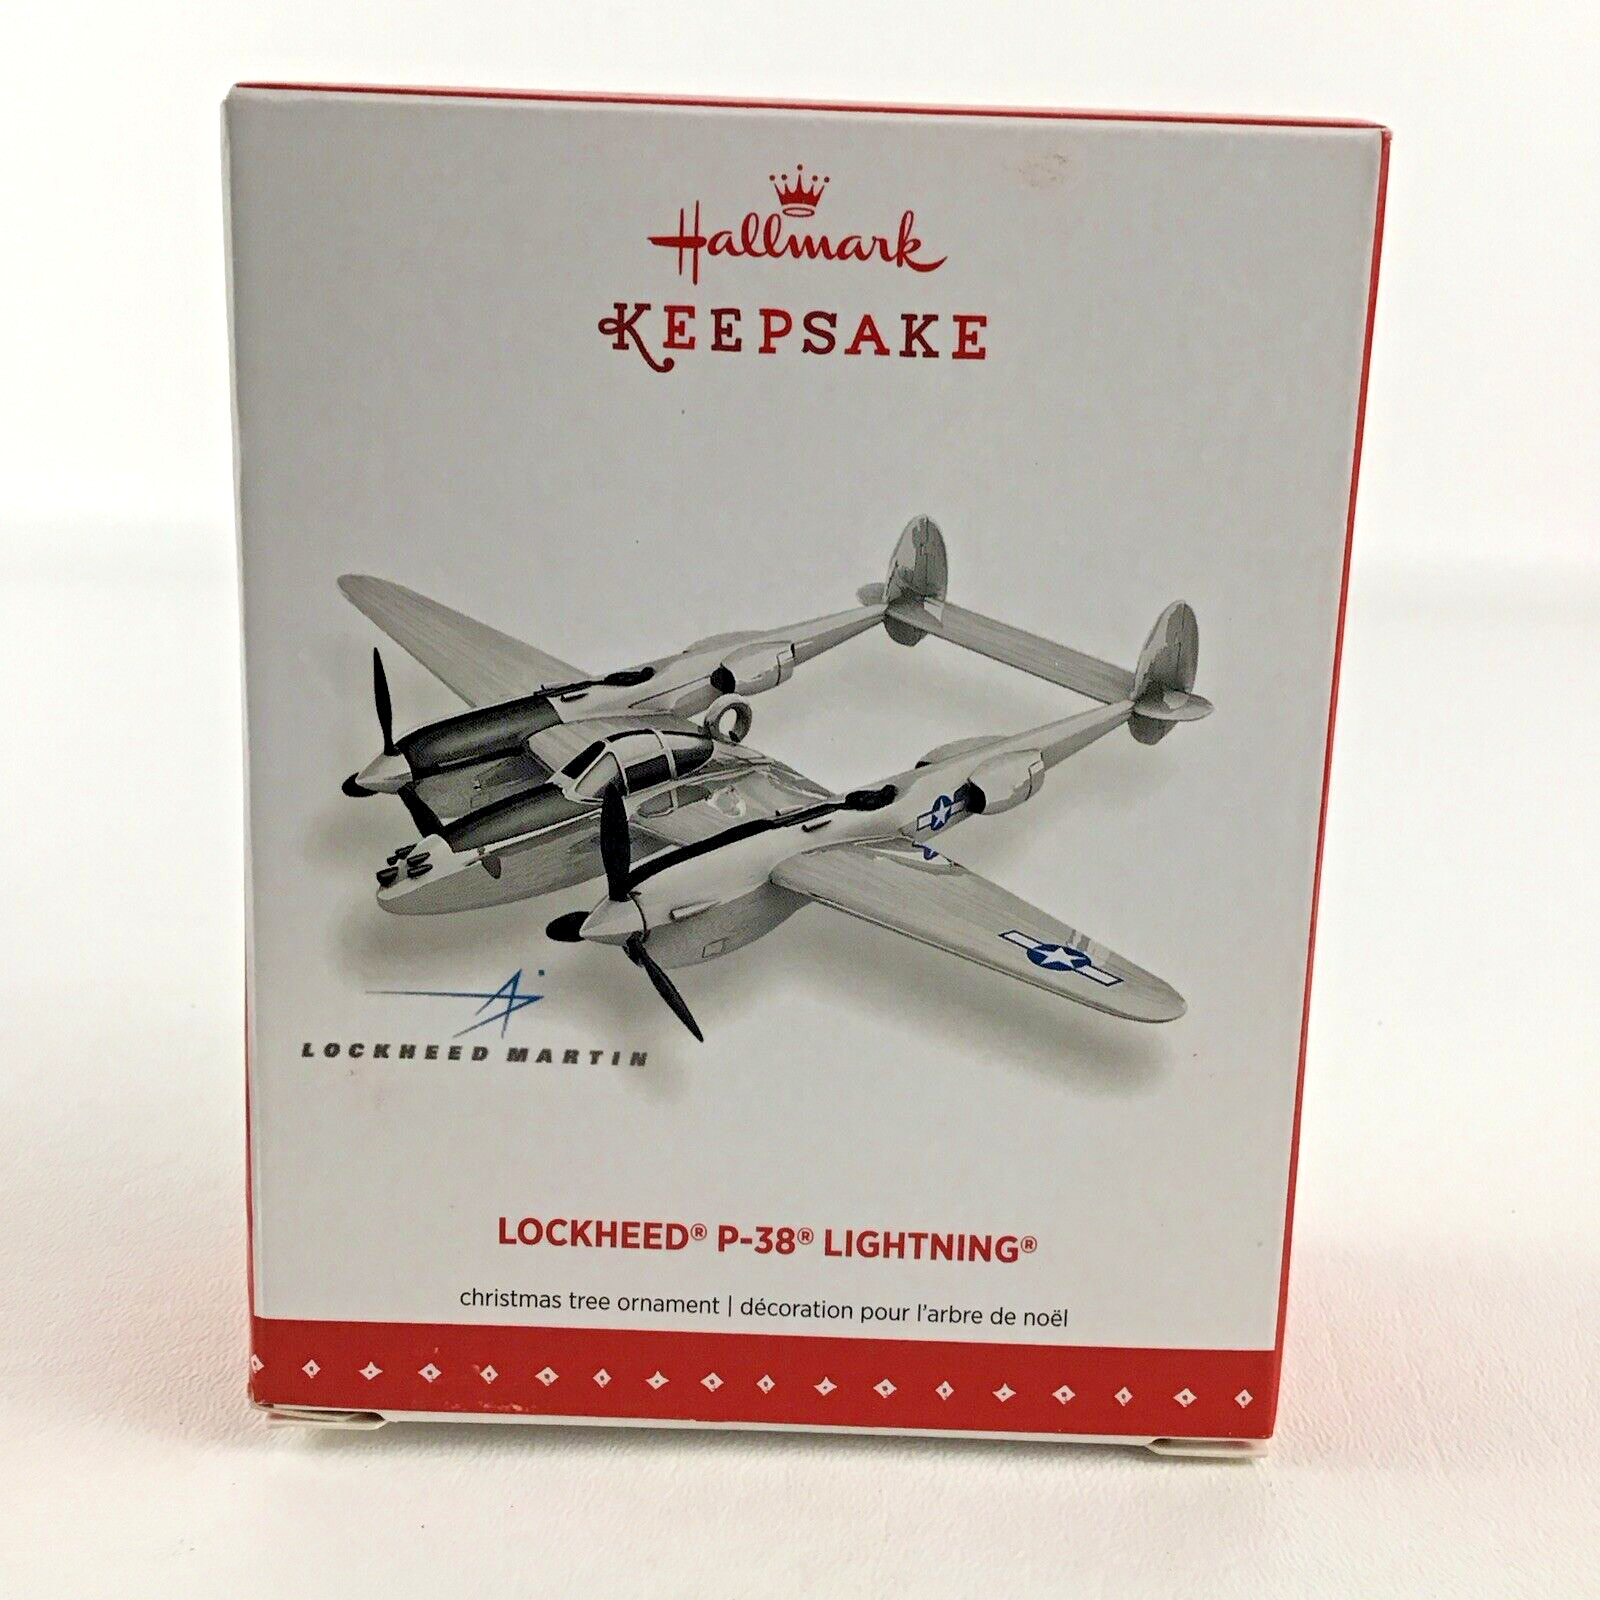 Hallmark Keepsake Christmas Ornament Lockheed P-38 Lightning Airplane New 2015